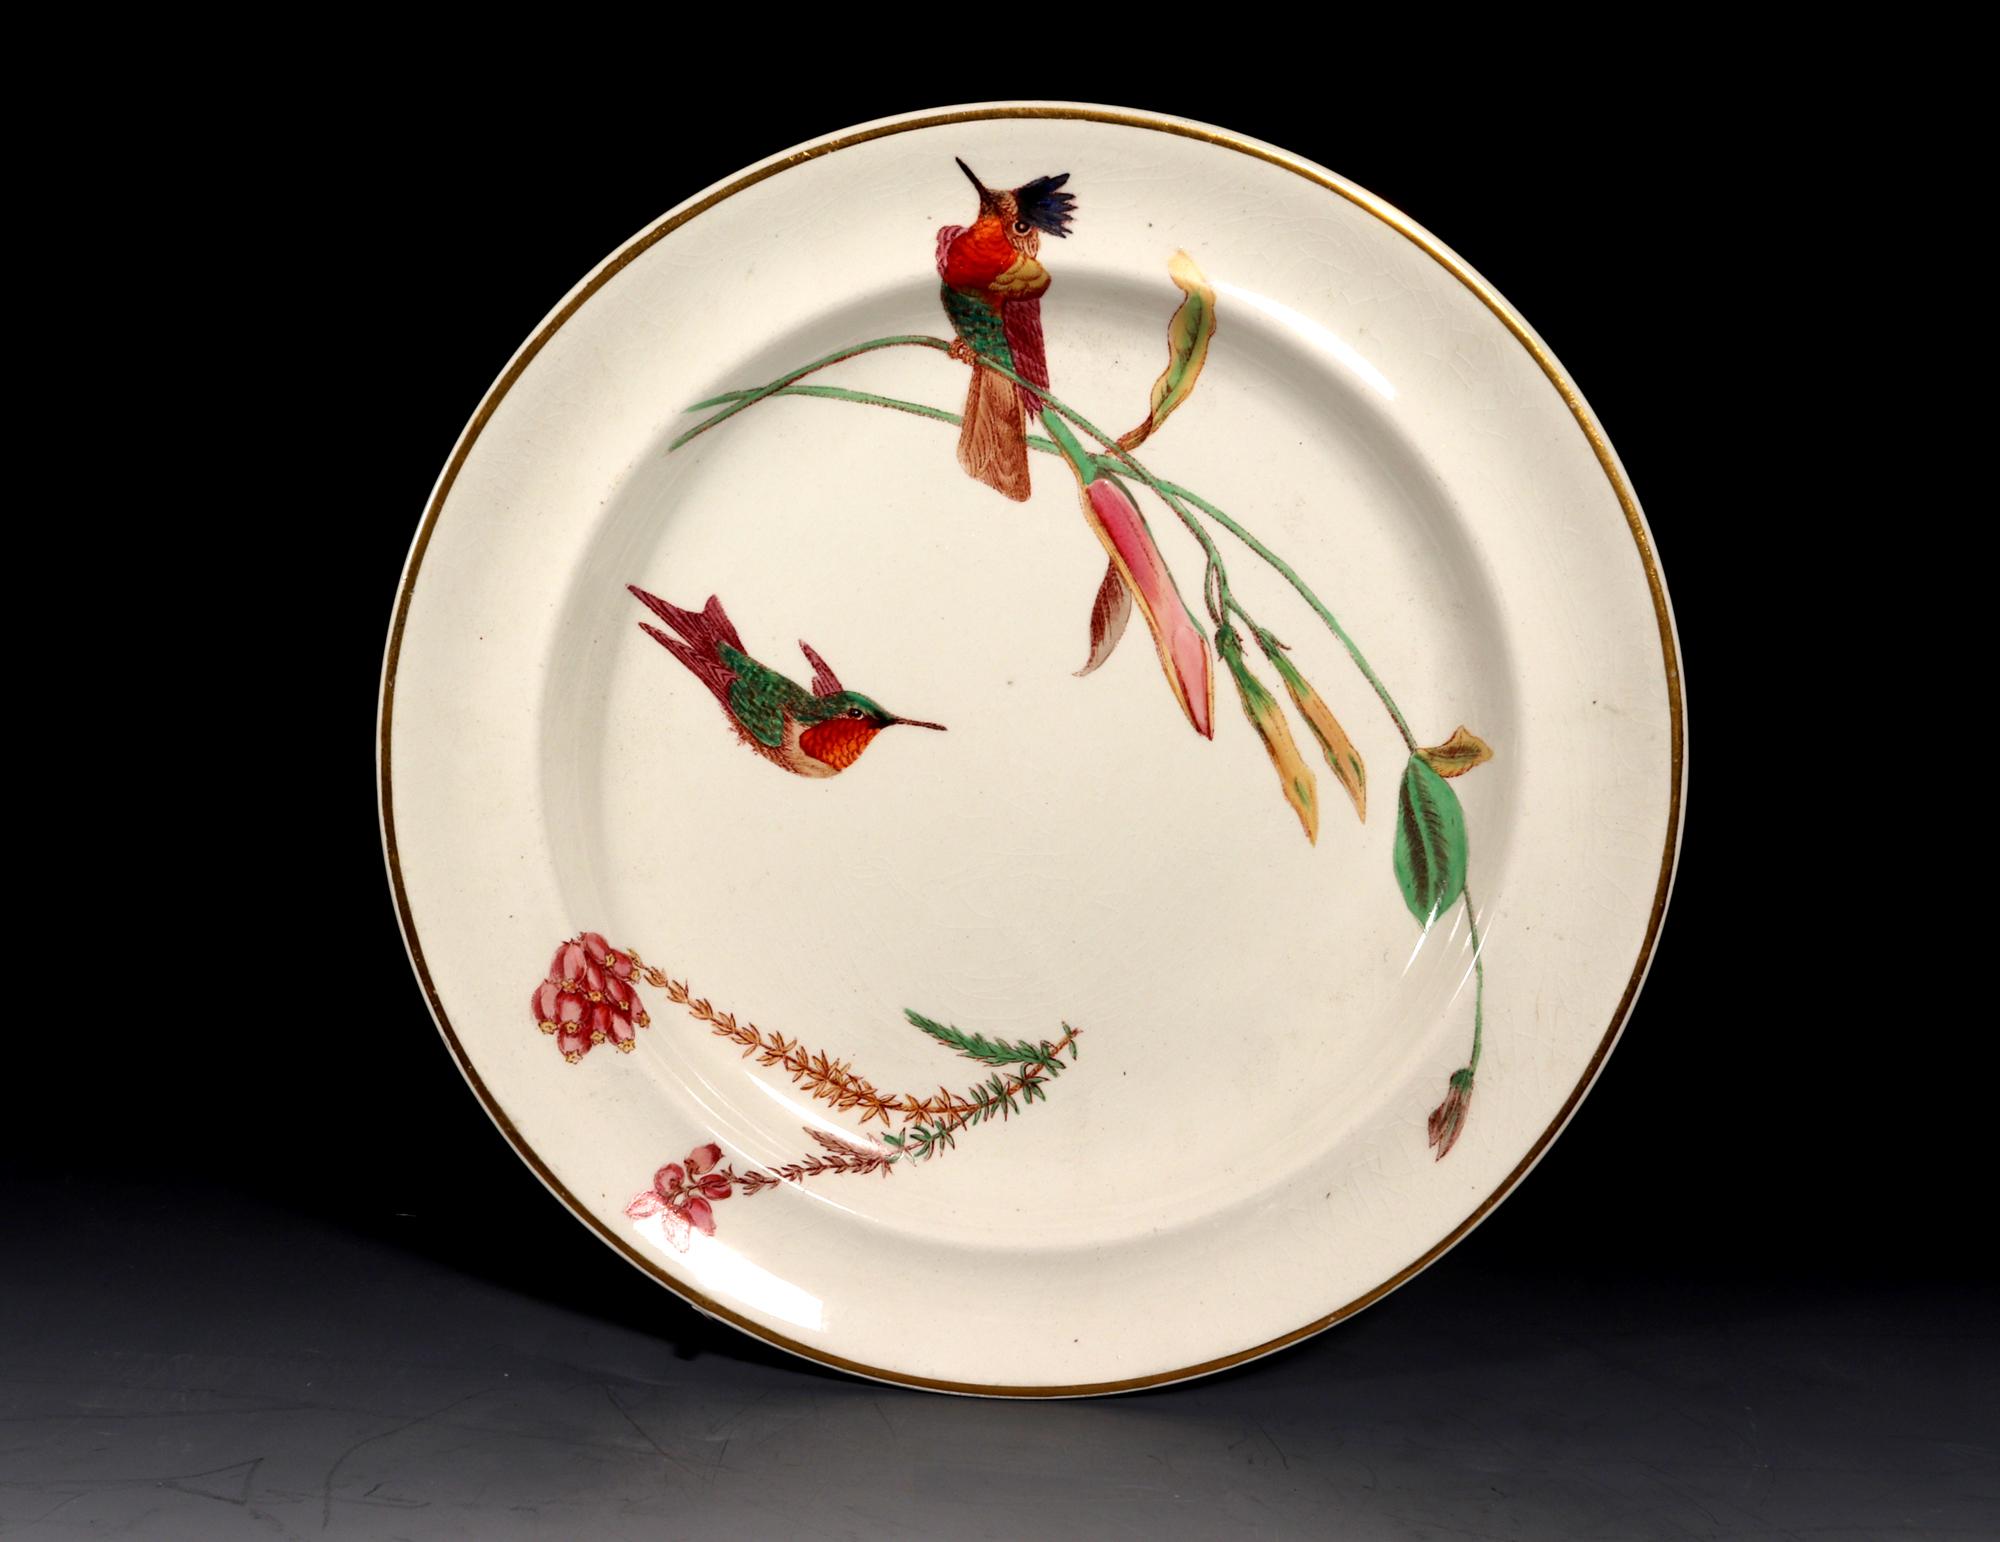 Charmant!
Wedgwood Creamware Teller,
Kolibri Schmetterling & Blumen Muster, 
Muster Nr. 7961,
Circa 1868.

Das Set aus drei absolut charmanten Wedgwood Cremetellern ist mit einem Muster bemalt, das als 